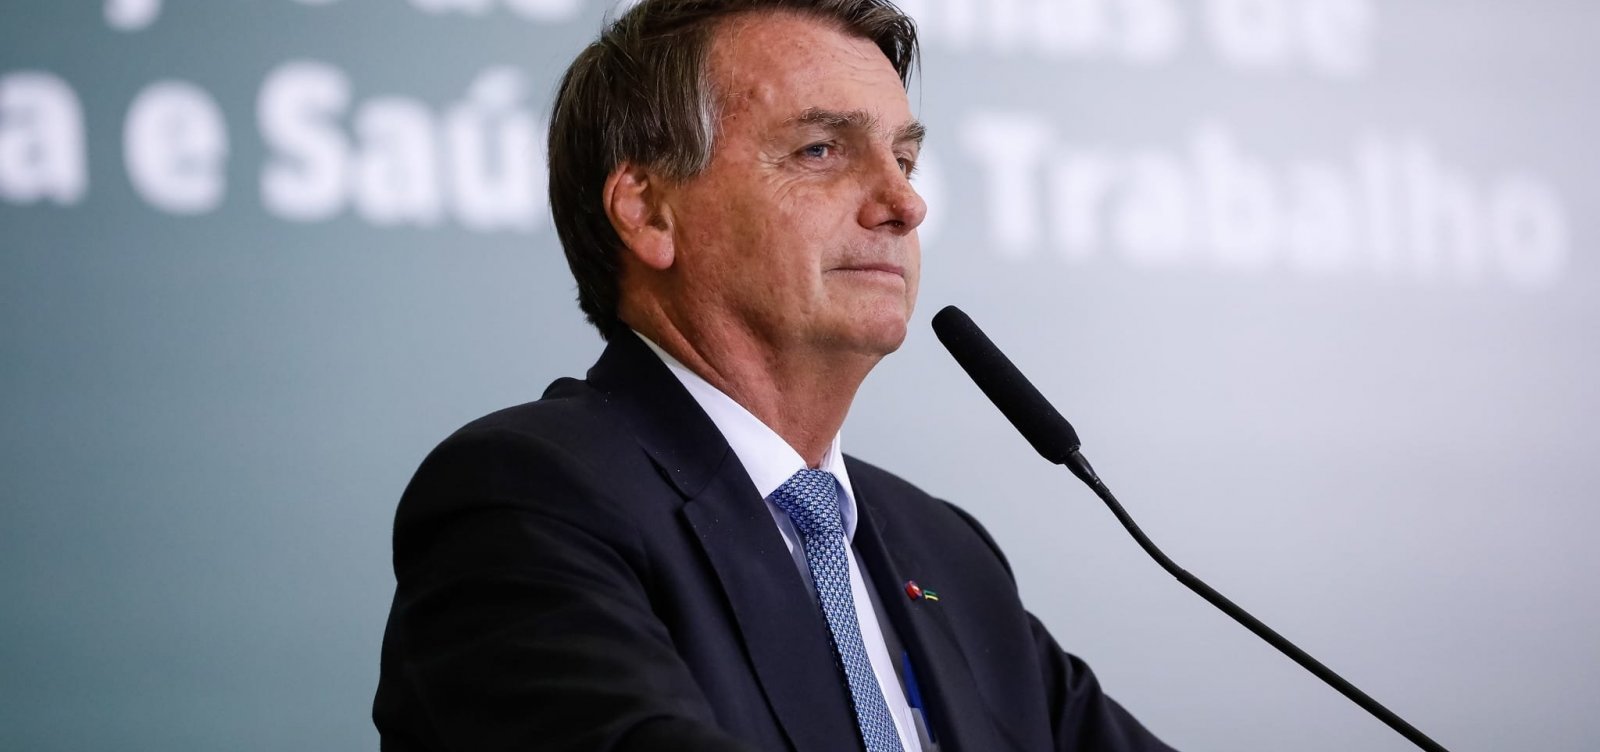 "Tenho vontade de privatizar Petrobras", diz Bolsonaro diante de alta no preços de combustíveis